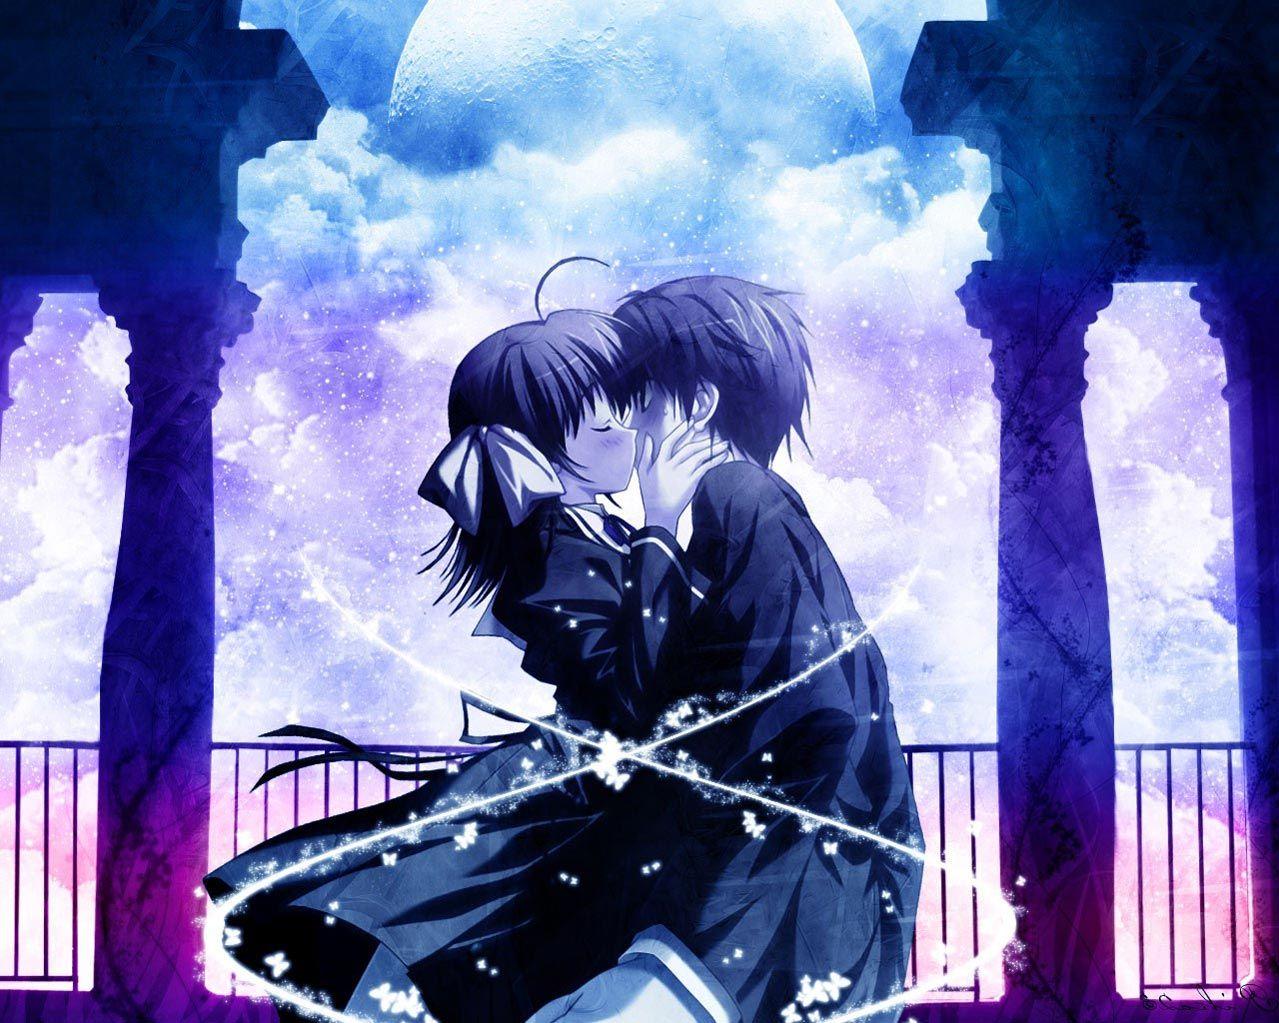 Anime Couple Kiss Wallpapers - Top Free Anime Couple Kiss ...